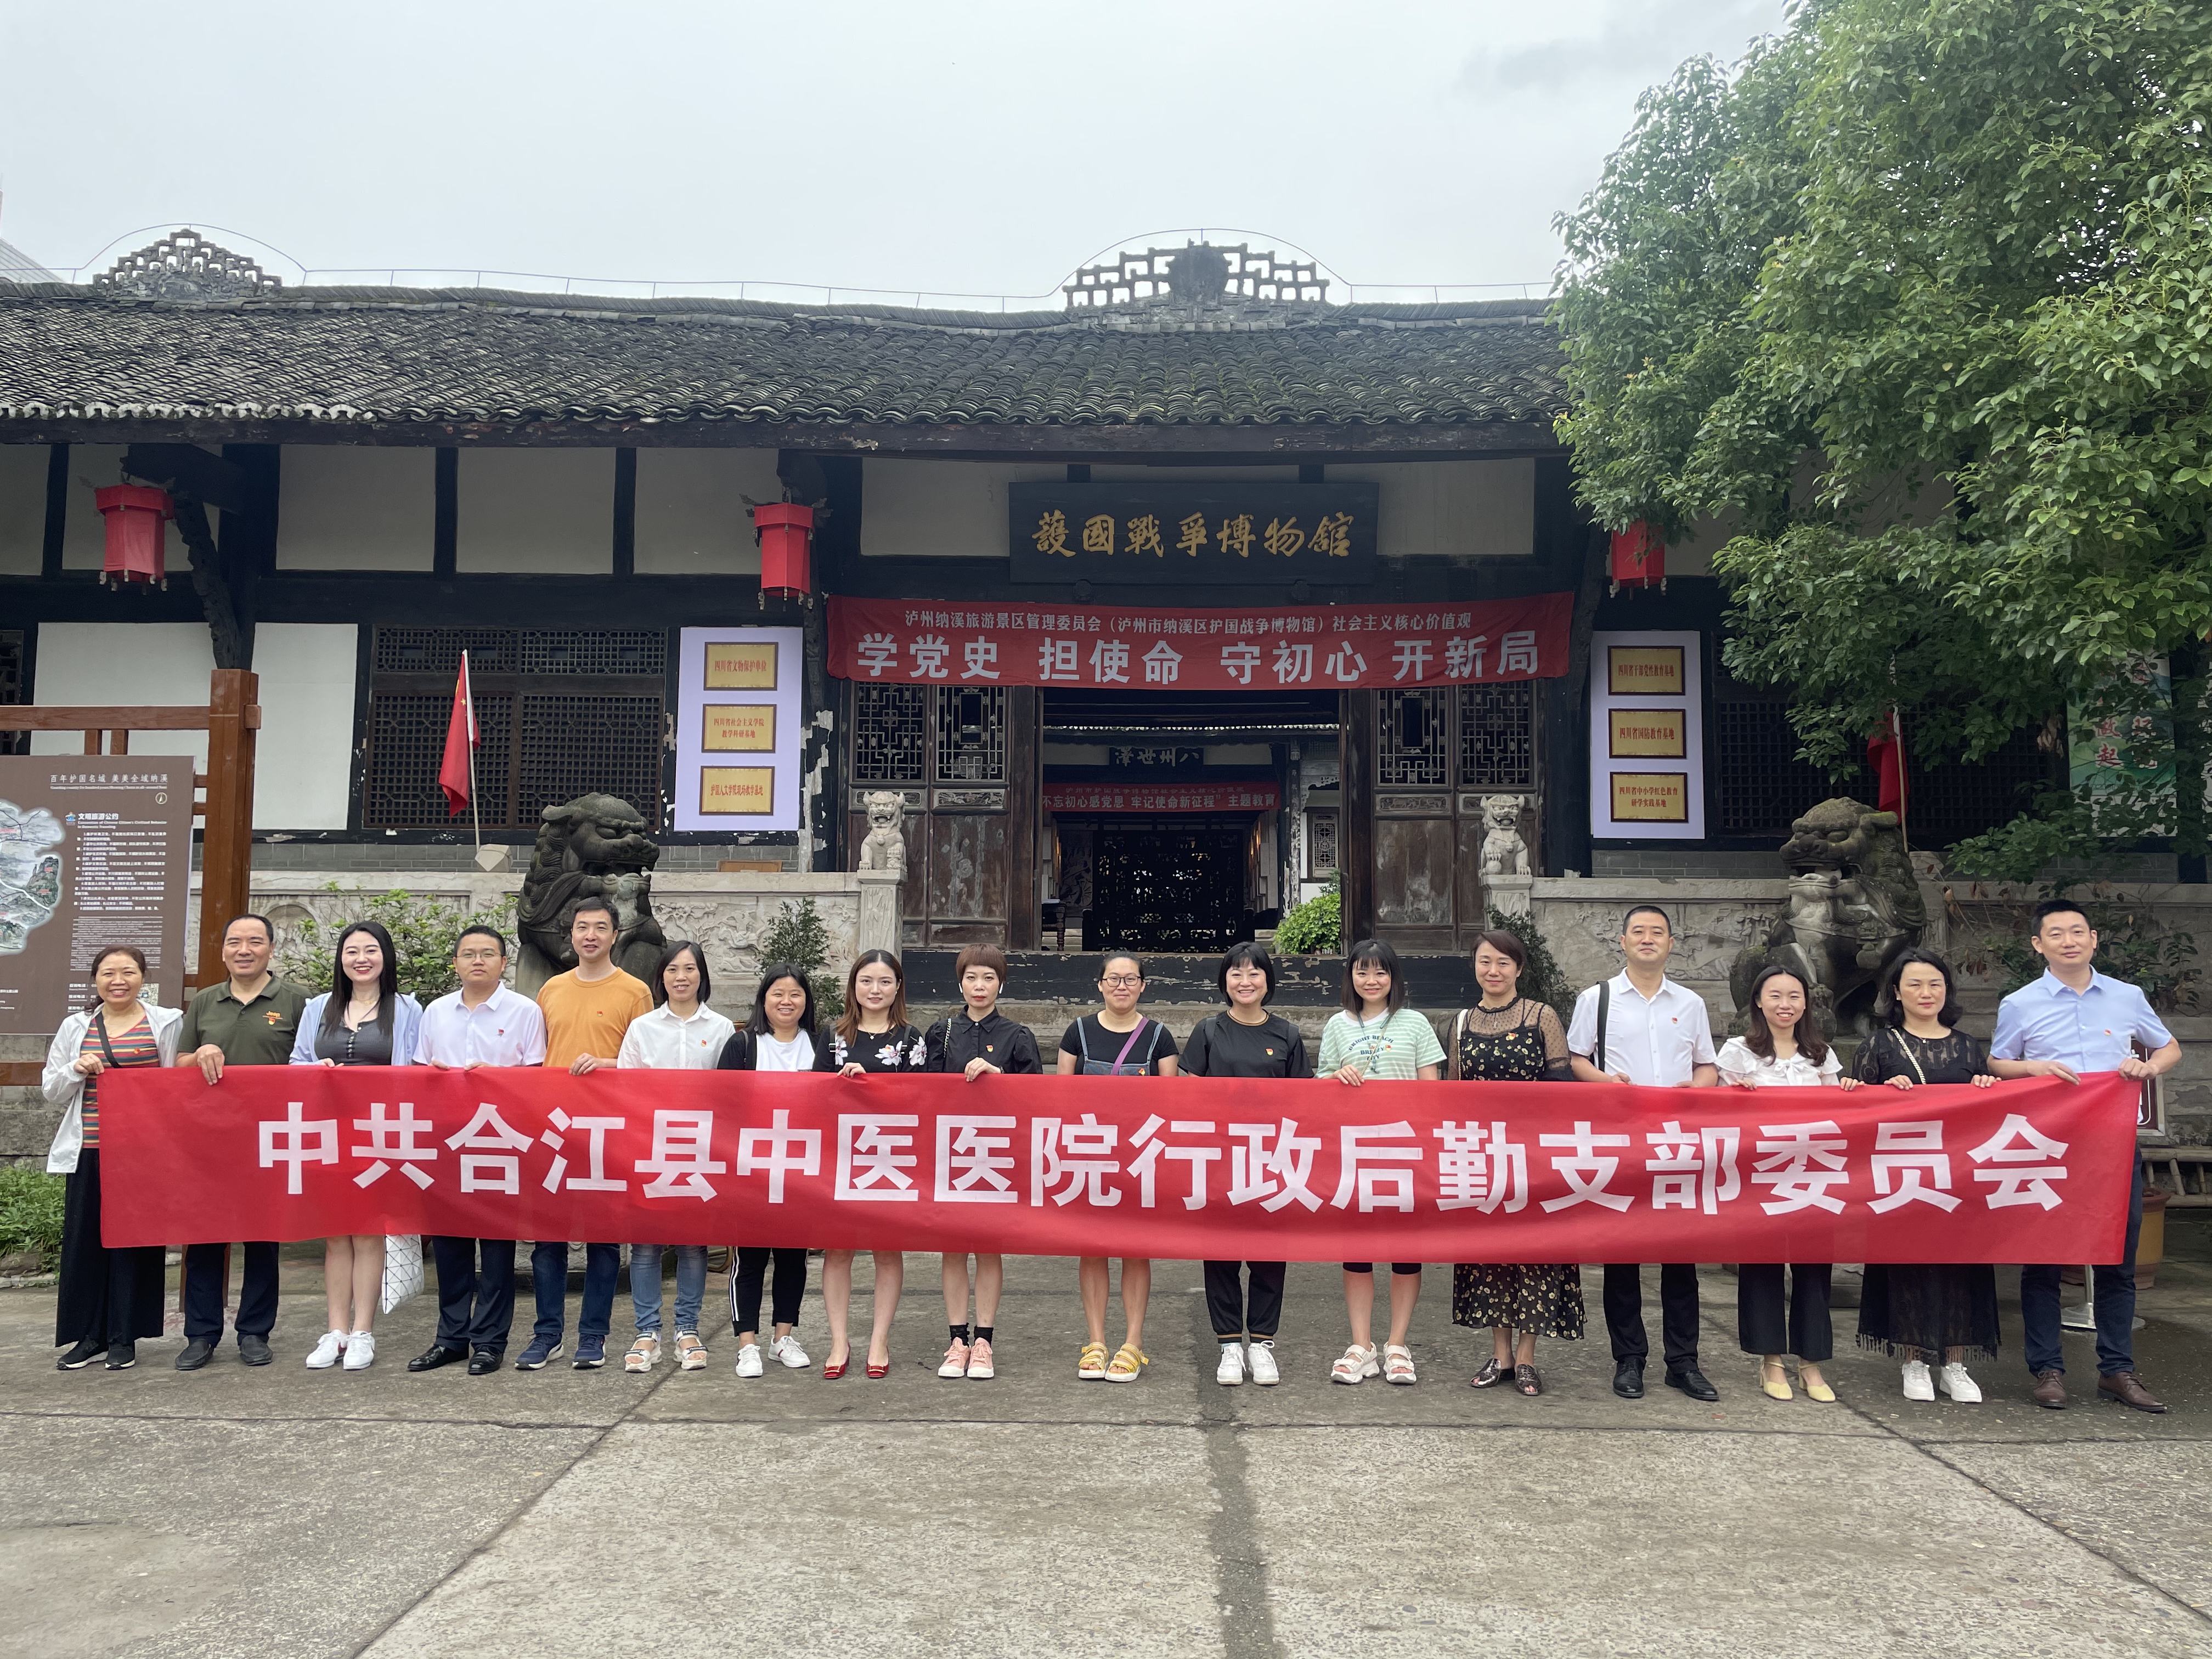 合江县中医医院开展庆祝建党 100 周年系列活动